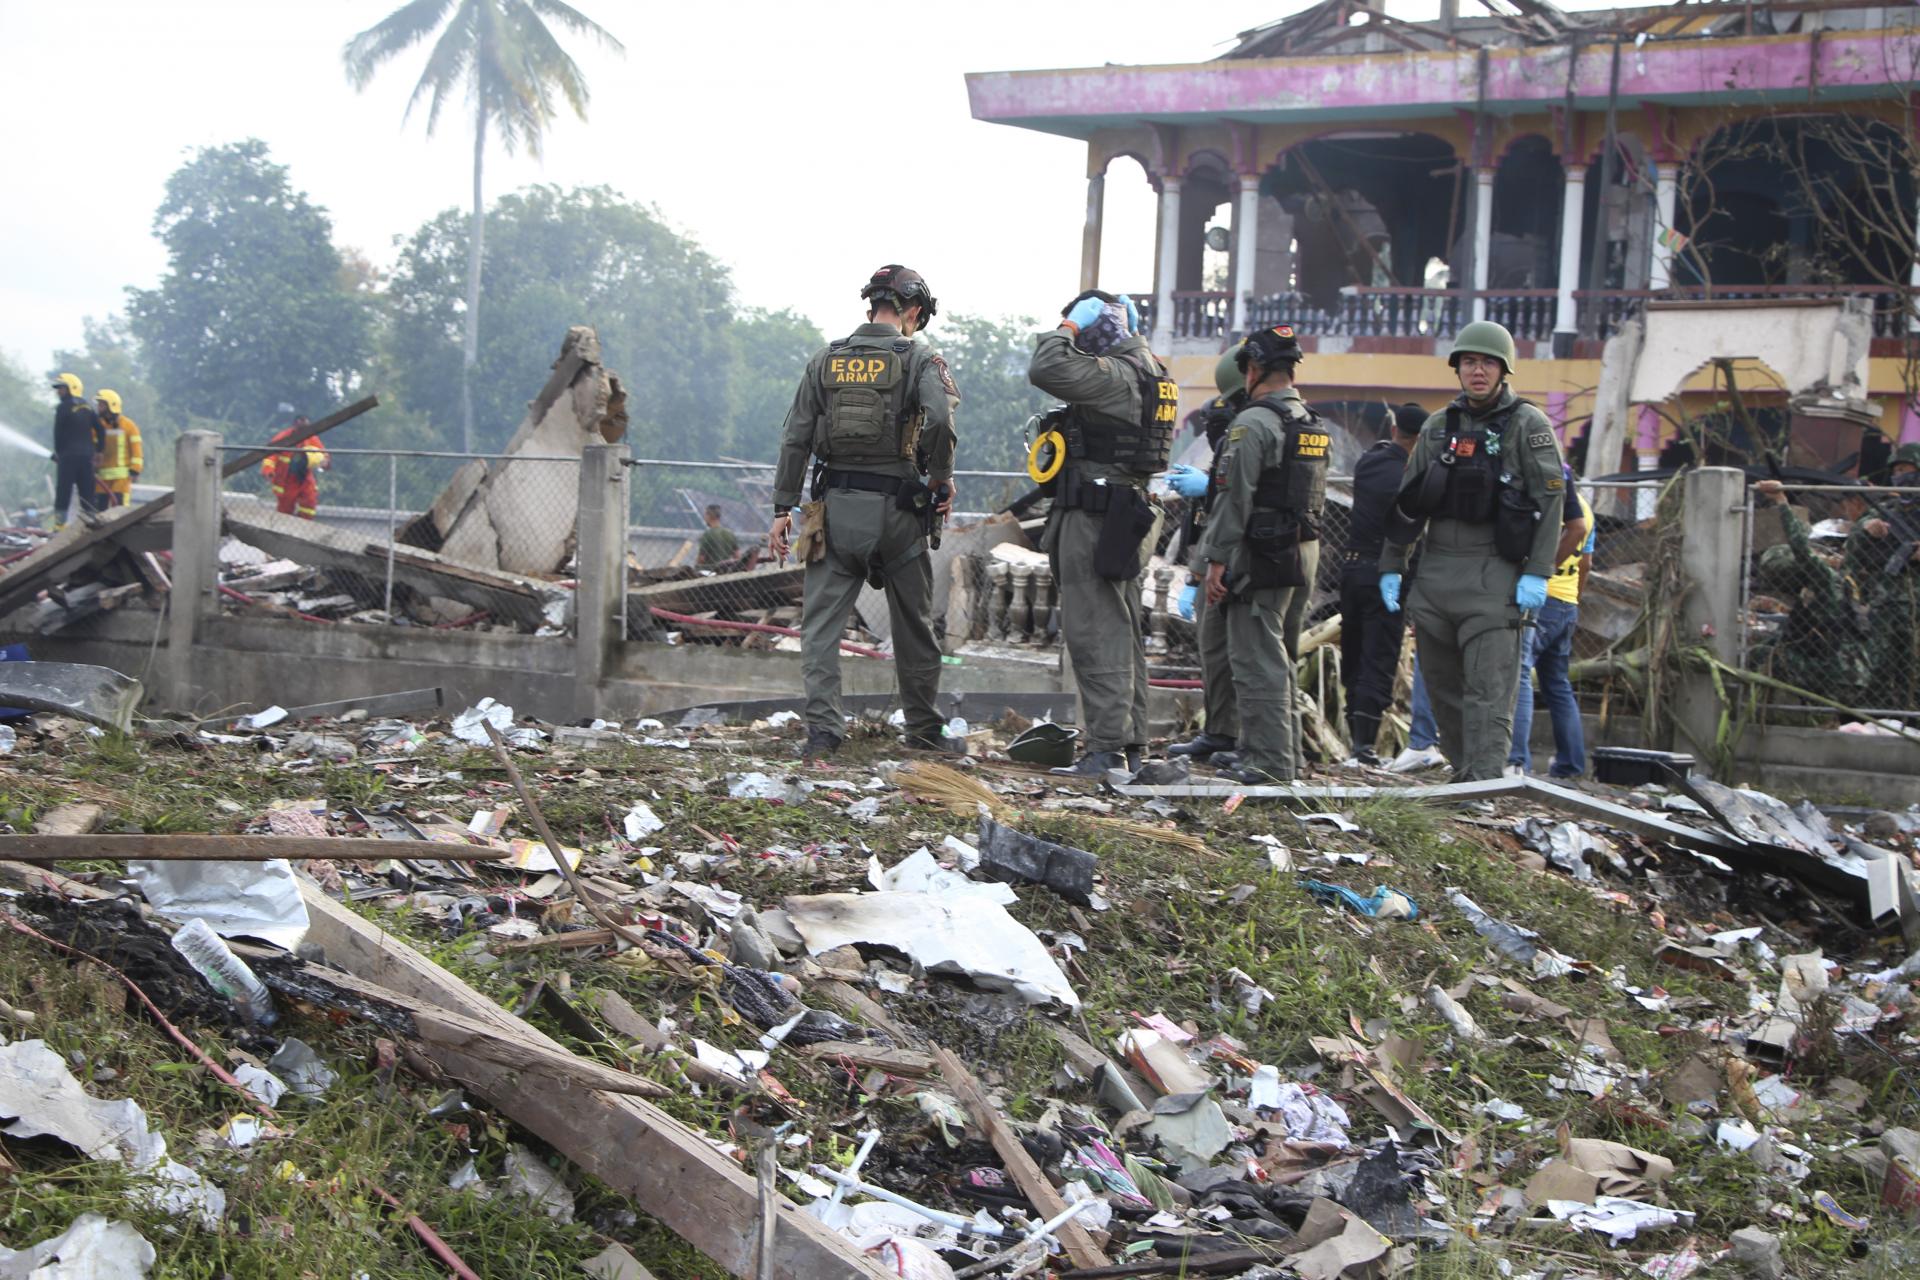 Explózia v sklade s pyrotechnikou v Thajsku si vyžiadala najmenej desať mŕtvych